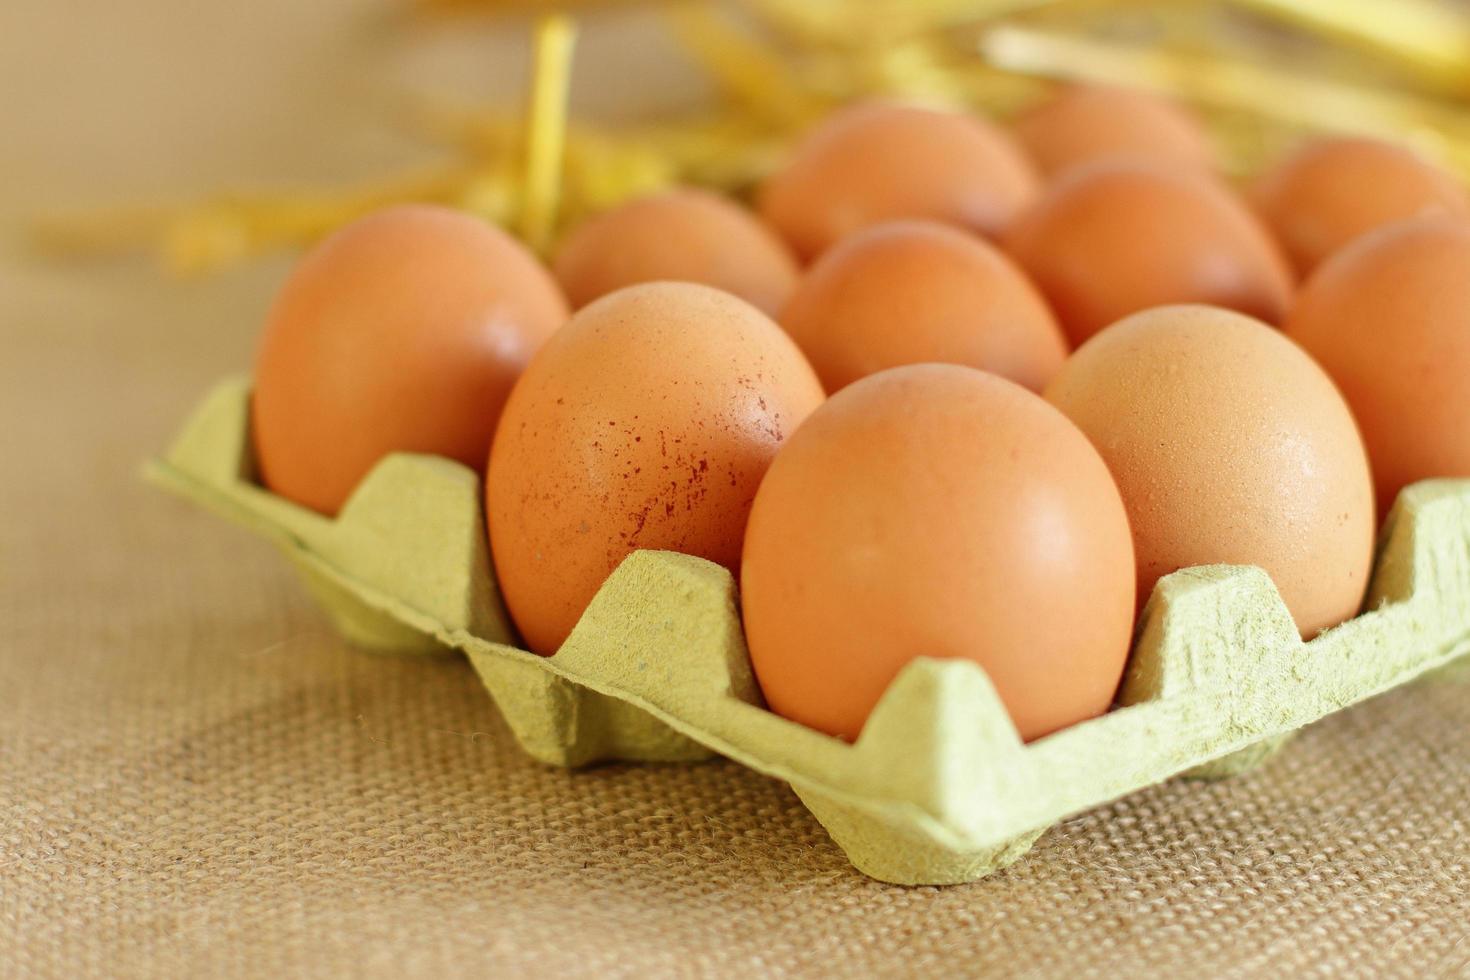 bandeja de ovos crus de fazenda em fundo de saco foto